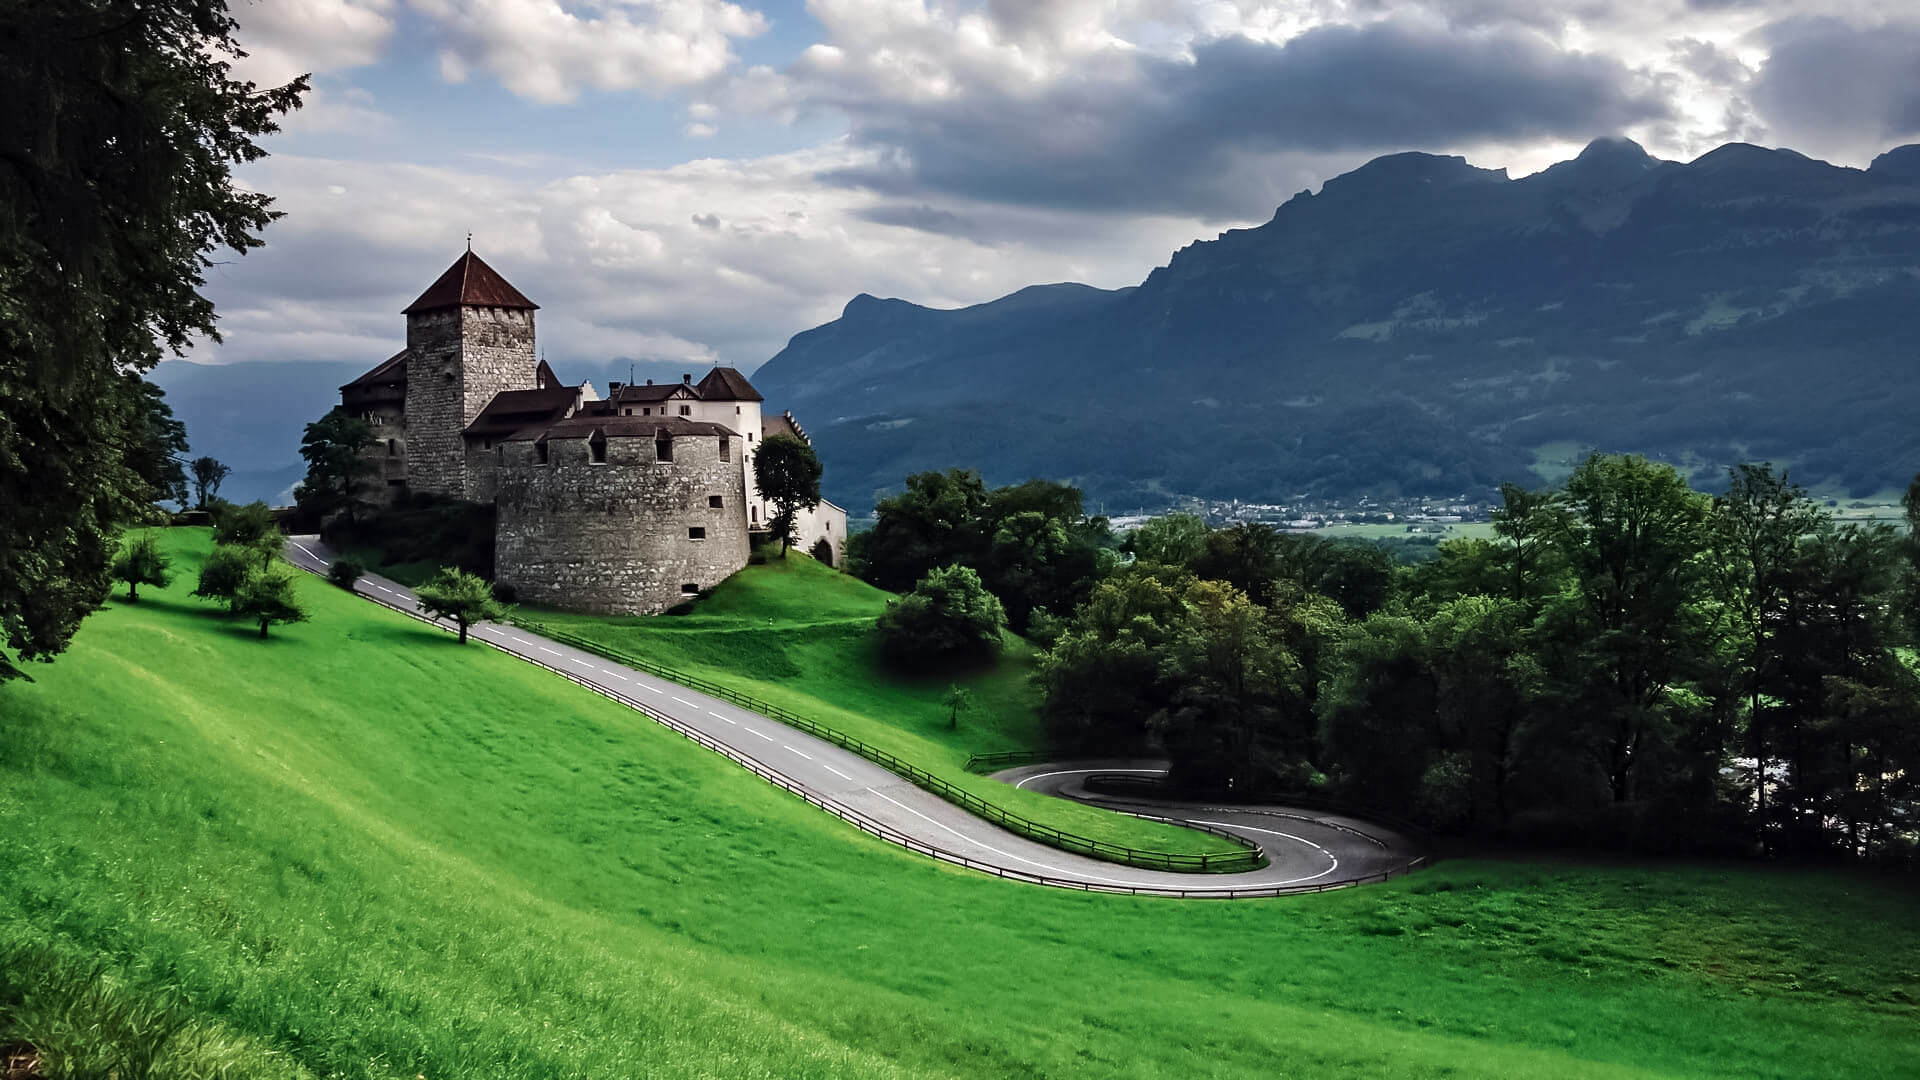 Liechtenstein travel guide - Travel S helper